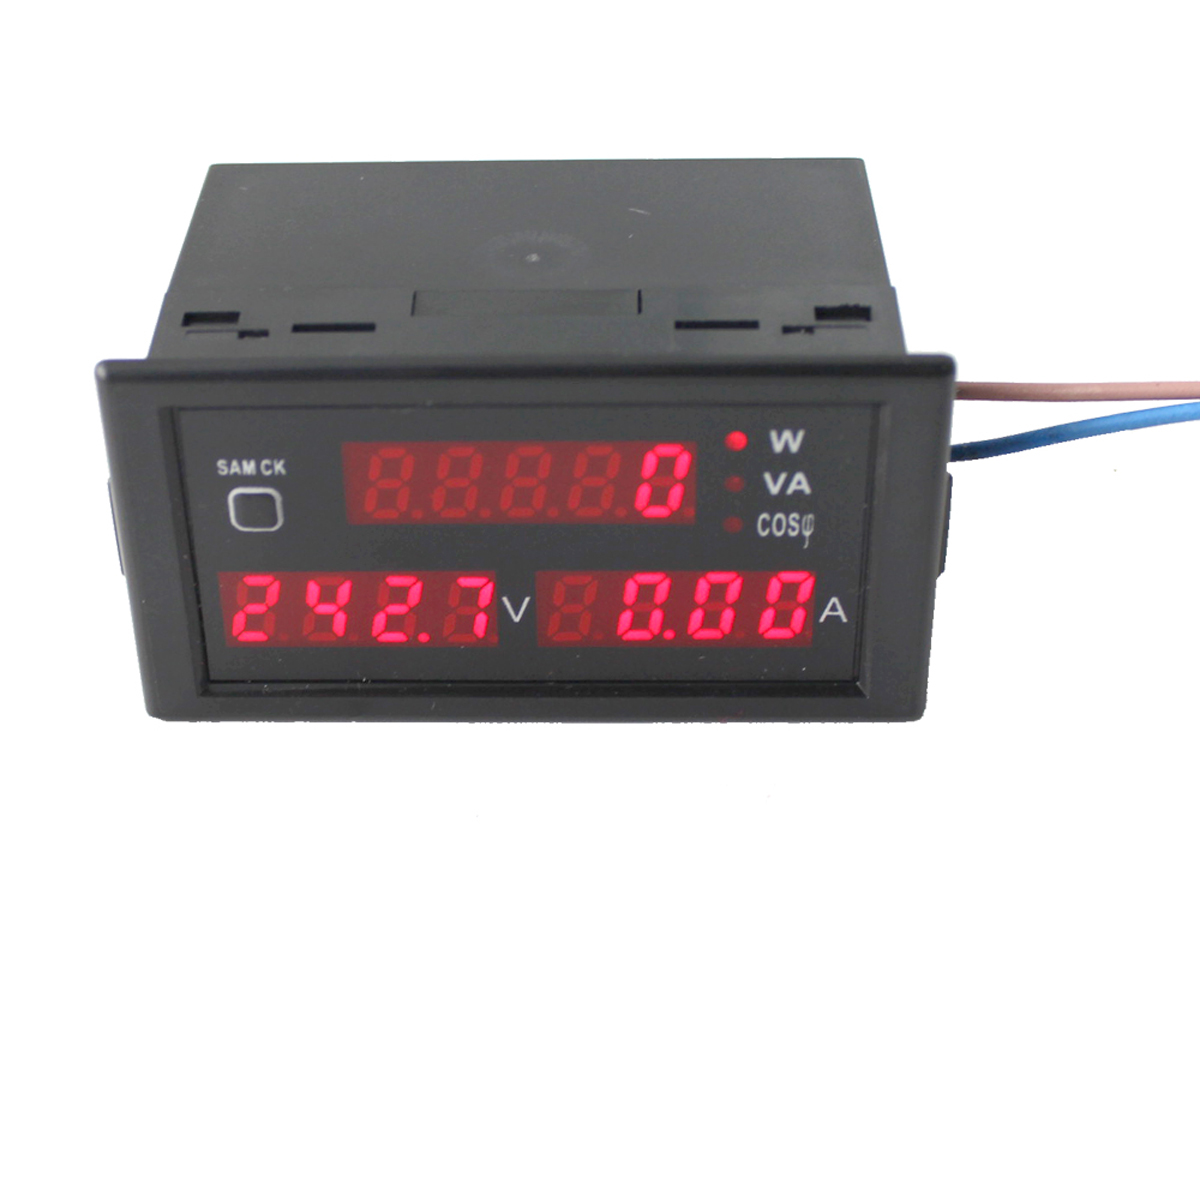 

DL69-2048 LCD Digital Multifunctional AC Voltmeter Ammeter Voltage Current Meter AC200-450V